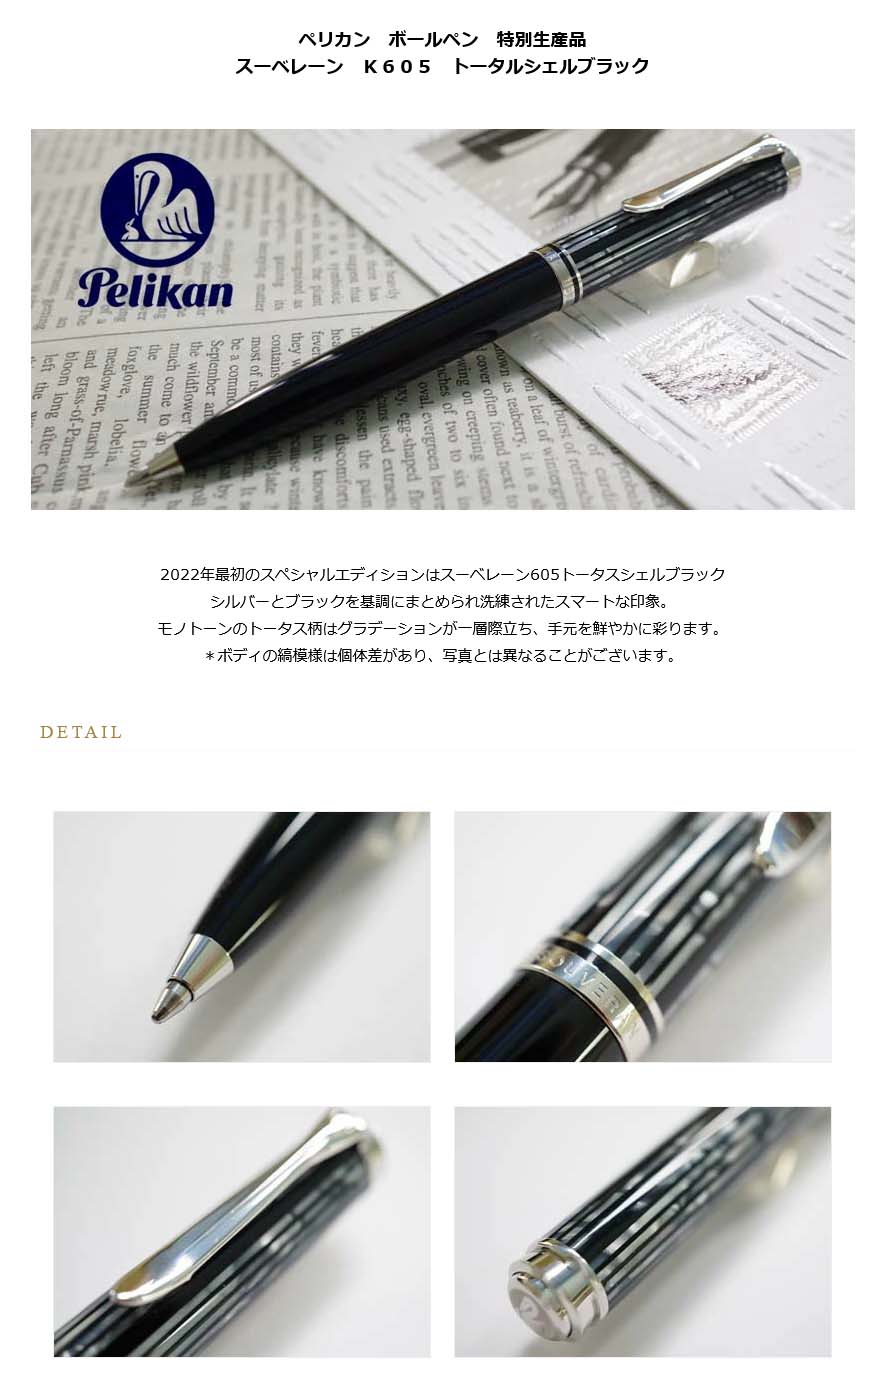 ペリカン スーベレーン K605 ボールペン トータスシェルブラック-